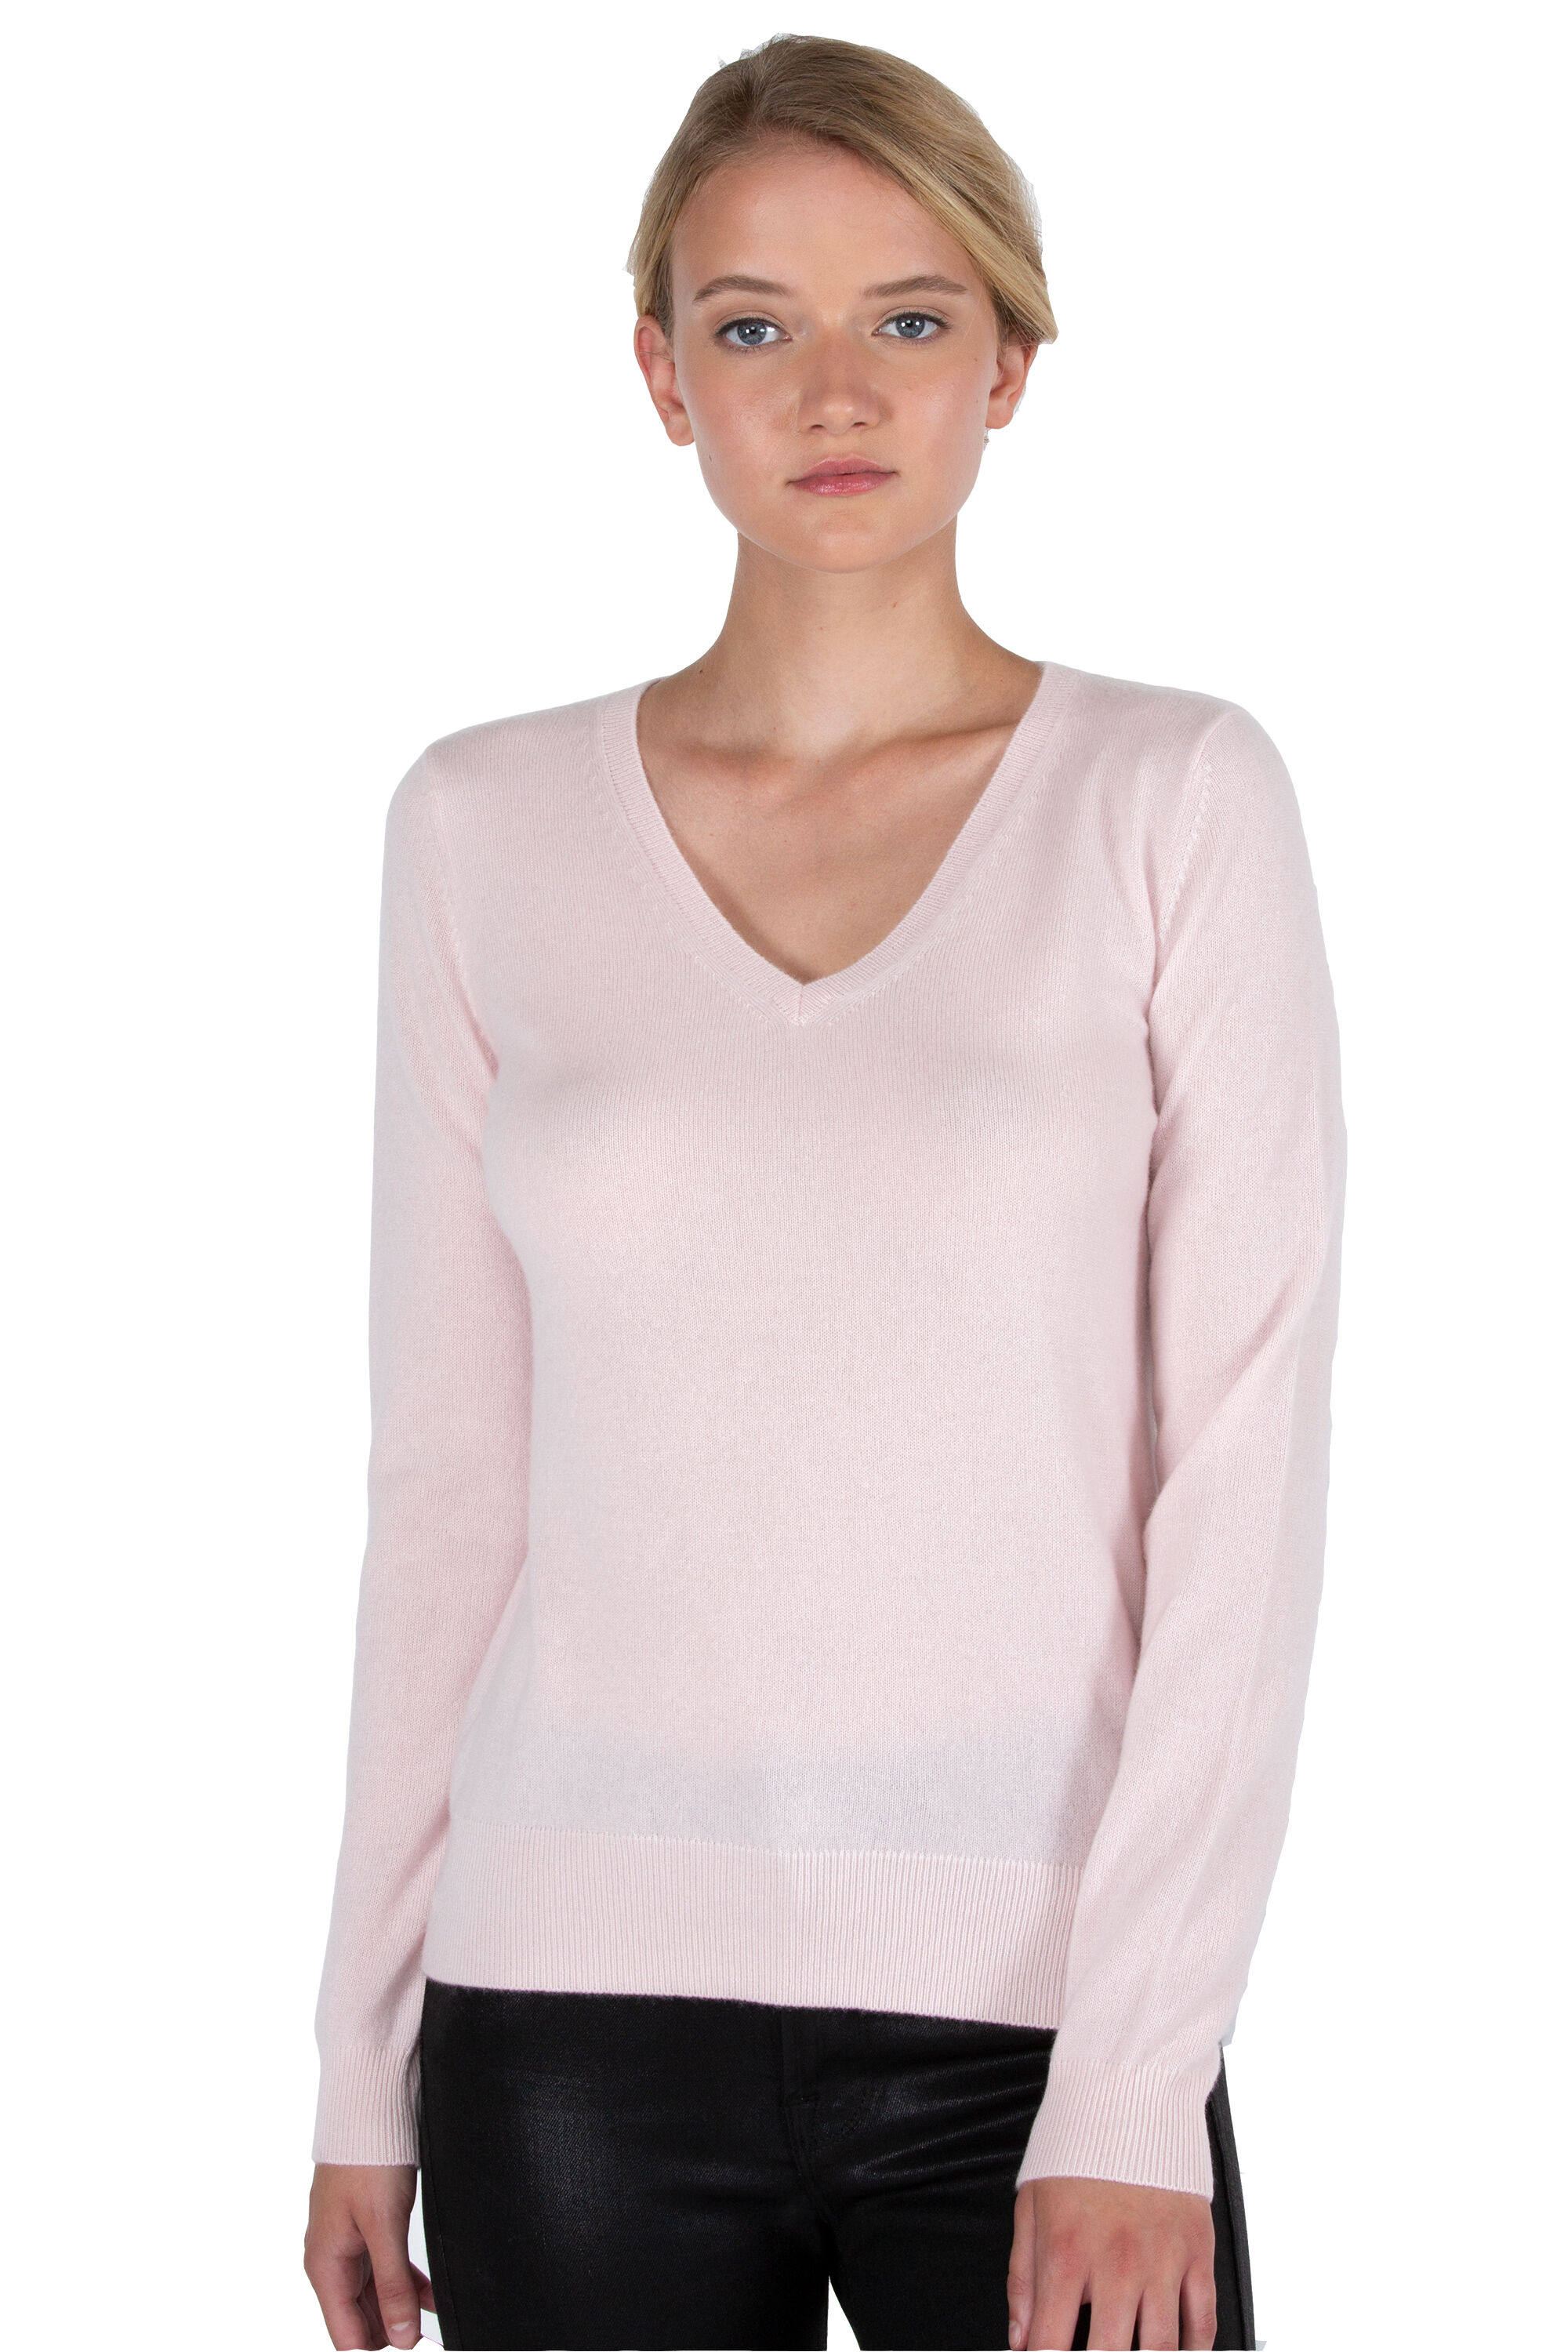 Petal Pink Cashmere v-neck Sweater - J CASHMERE